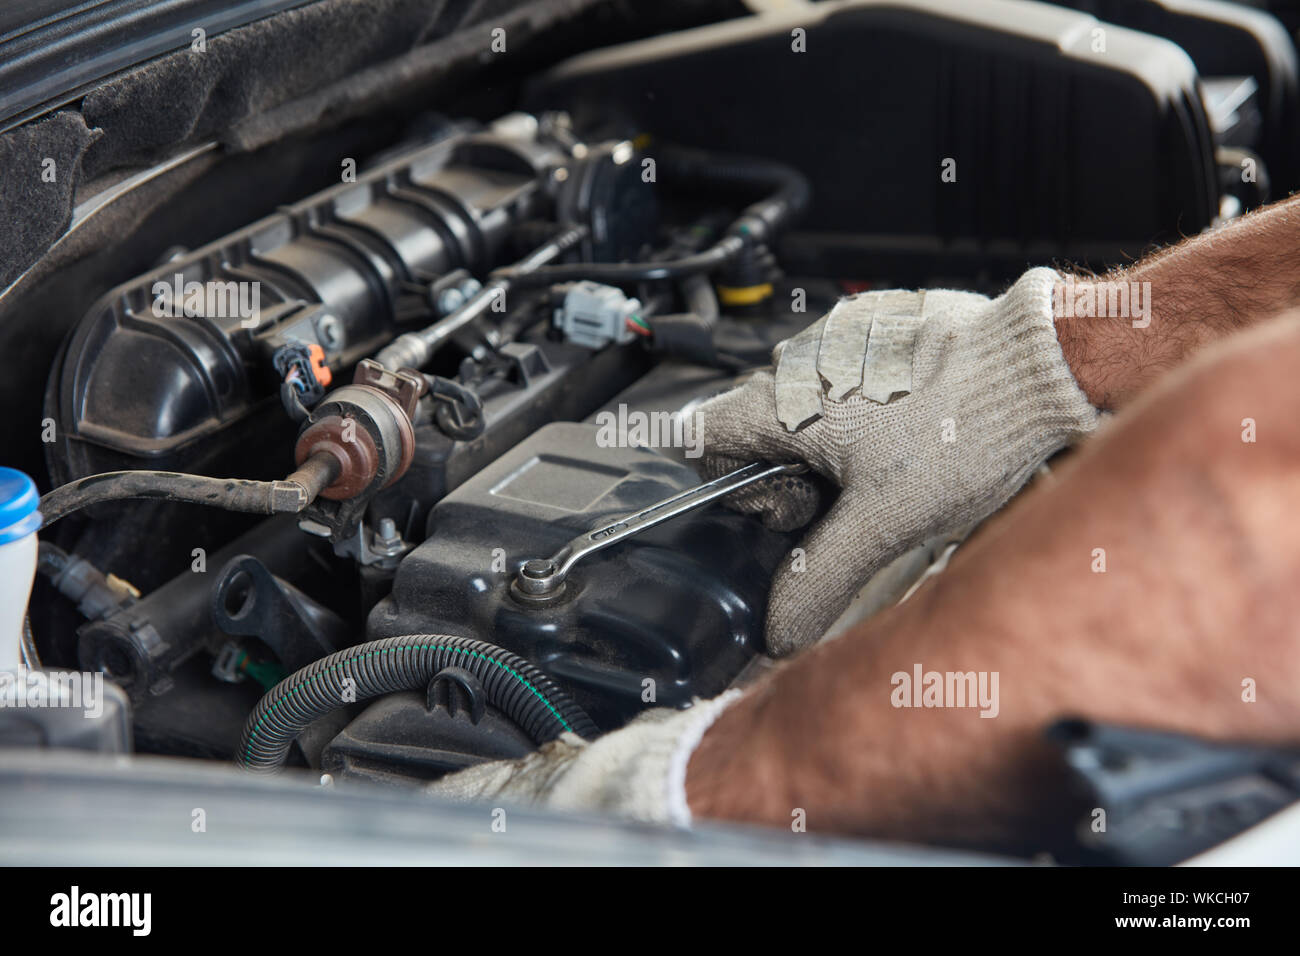 KFZ Mechaniker repariert Motor eines Fahrzeugs in der Autowerkstatt - Close  Up Hand mit Werkzeug im Motorraum Photos